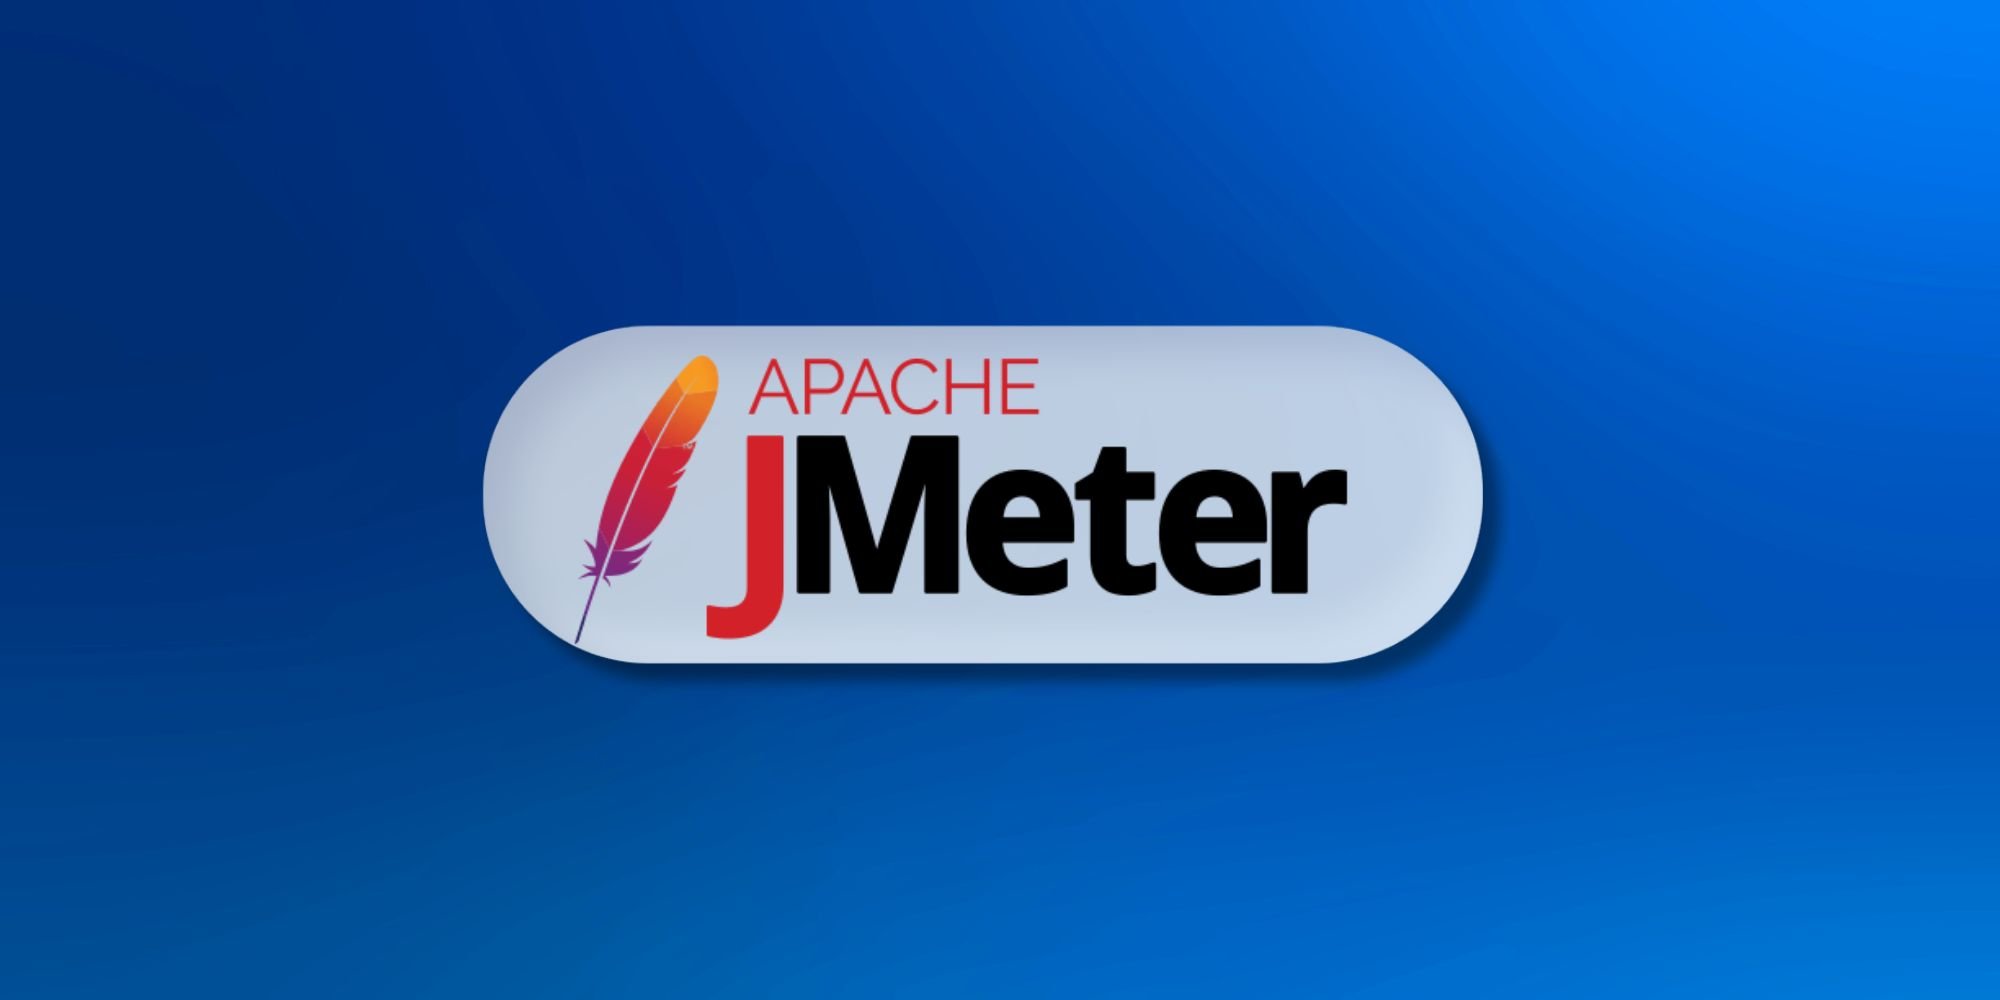 JMeter Training in Chennai